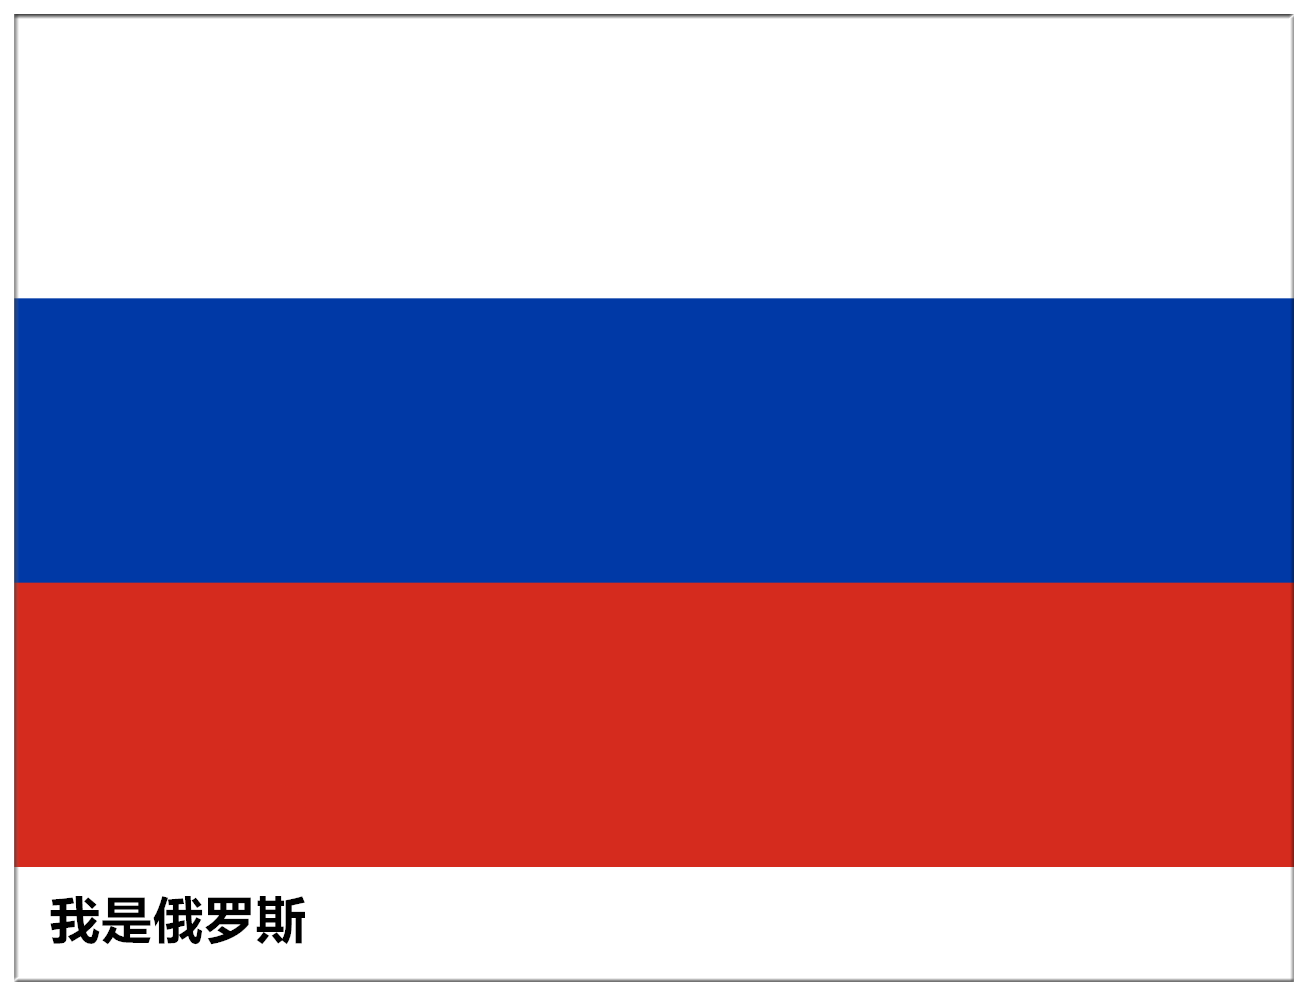 还有今年的俄罗斯世界杯,满屏幕的红蓝白三色国旗,到最后都不知道自己